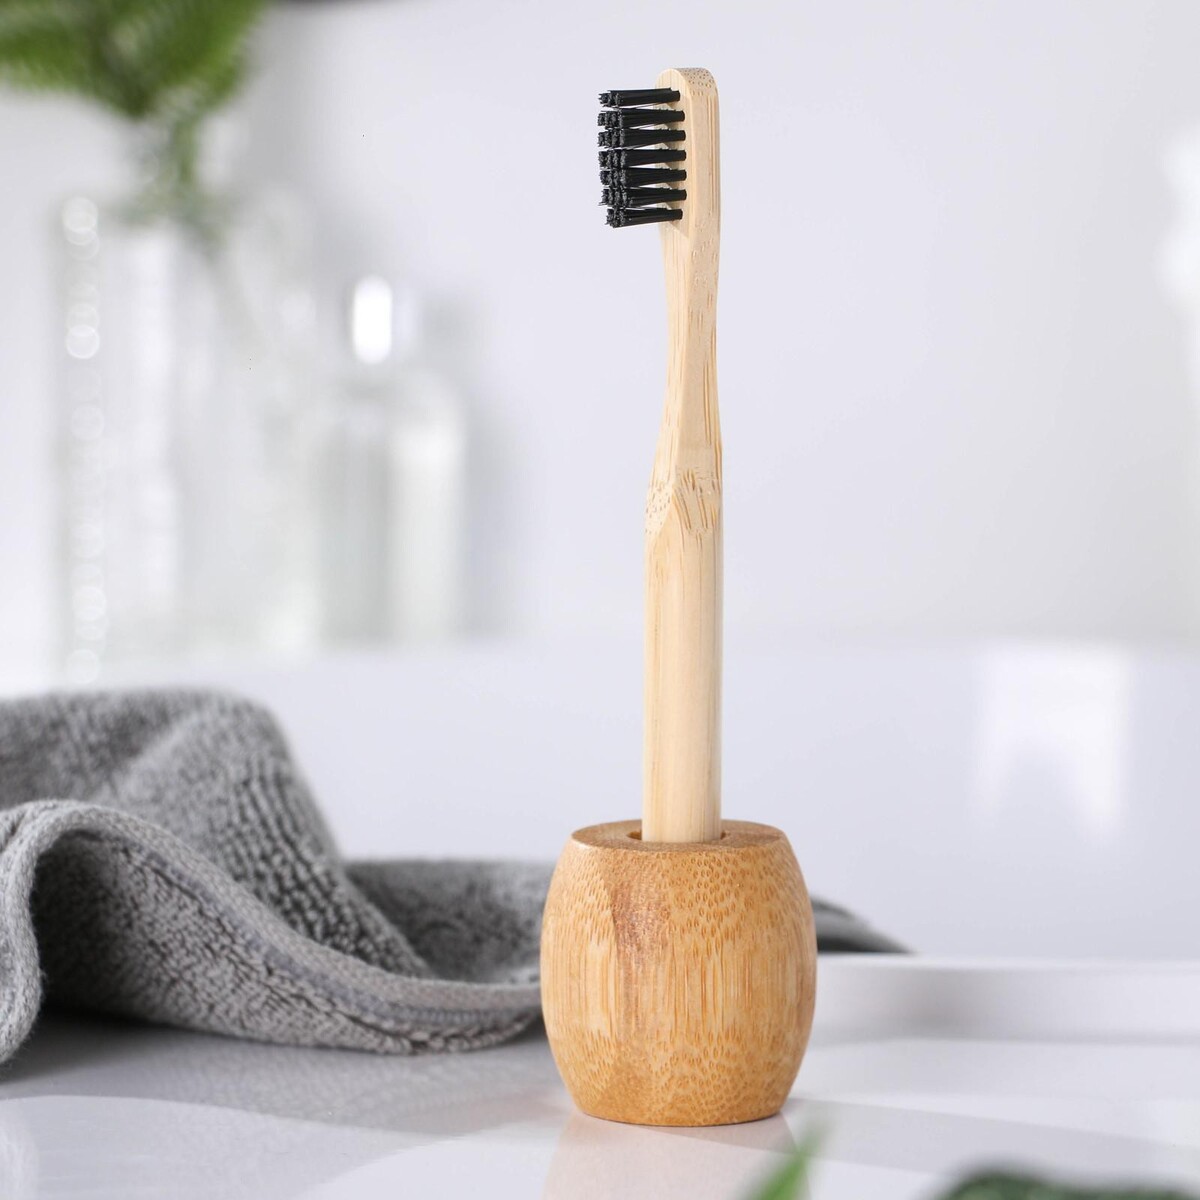 фото Бамбуковая зубная щетка с подставкой beauty fox